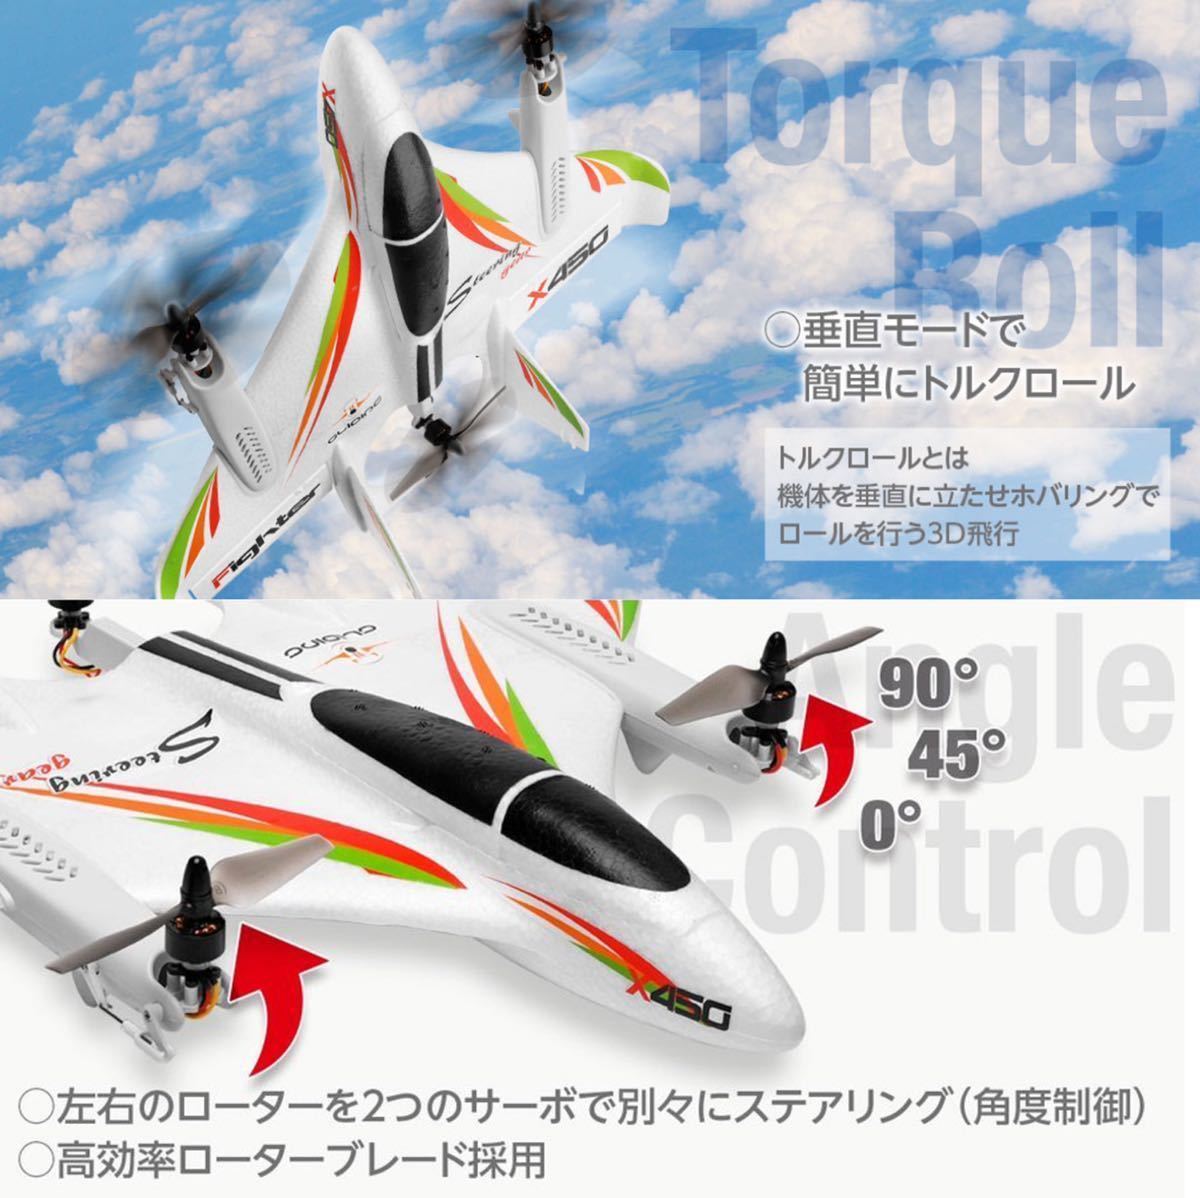 国内即納 XK X450 3D/6G ラジコン プレーン rc飛行機 VTOL ブラシレスモーター 固定翼垂直 ドローン 2.4G 6CH モード2送信機 日本語即飛行_画像5